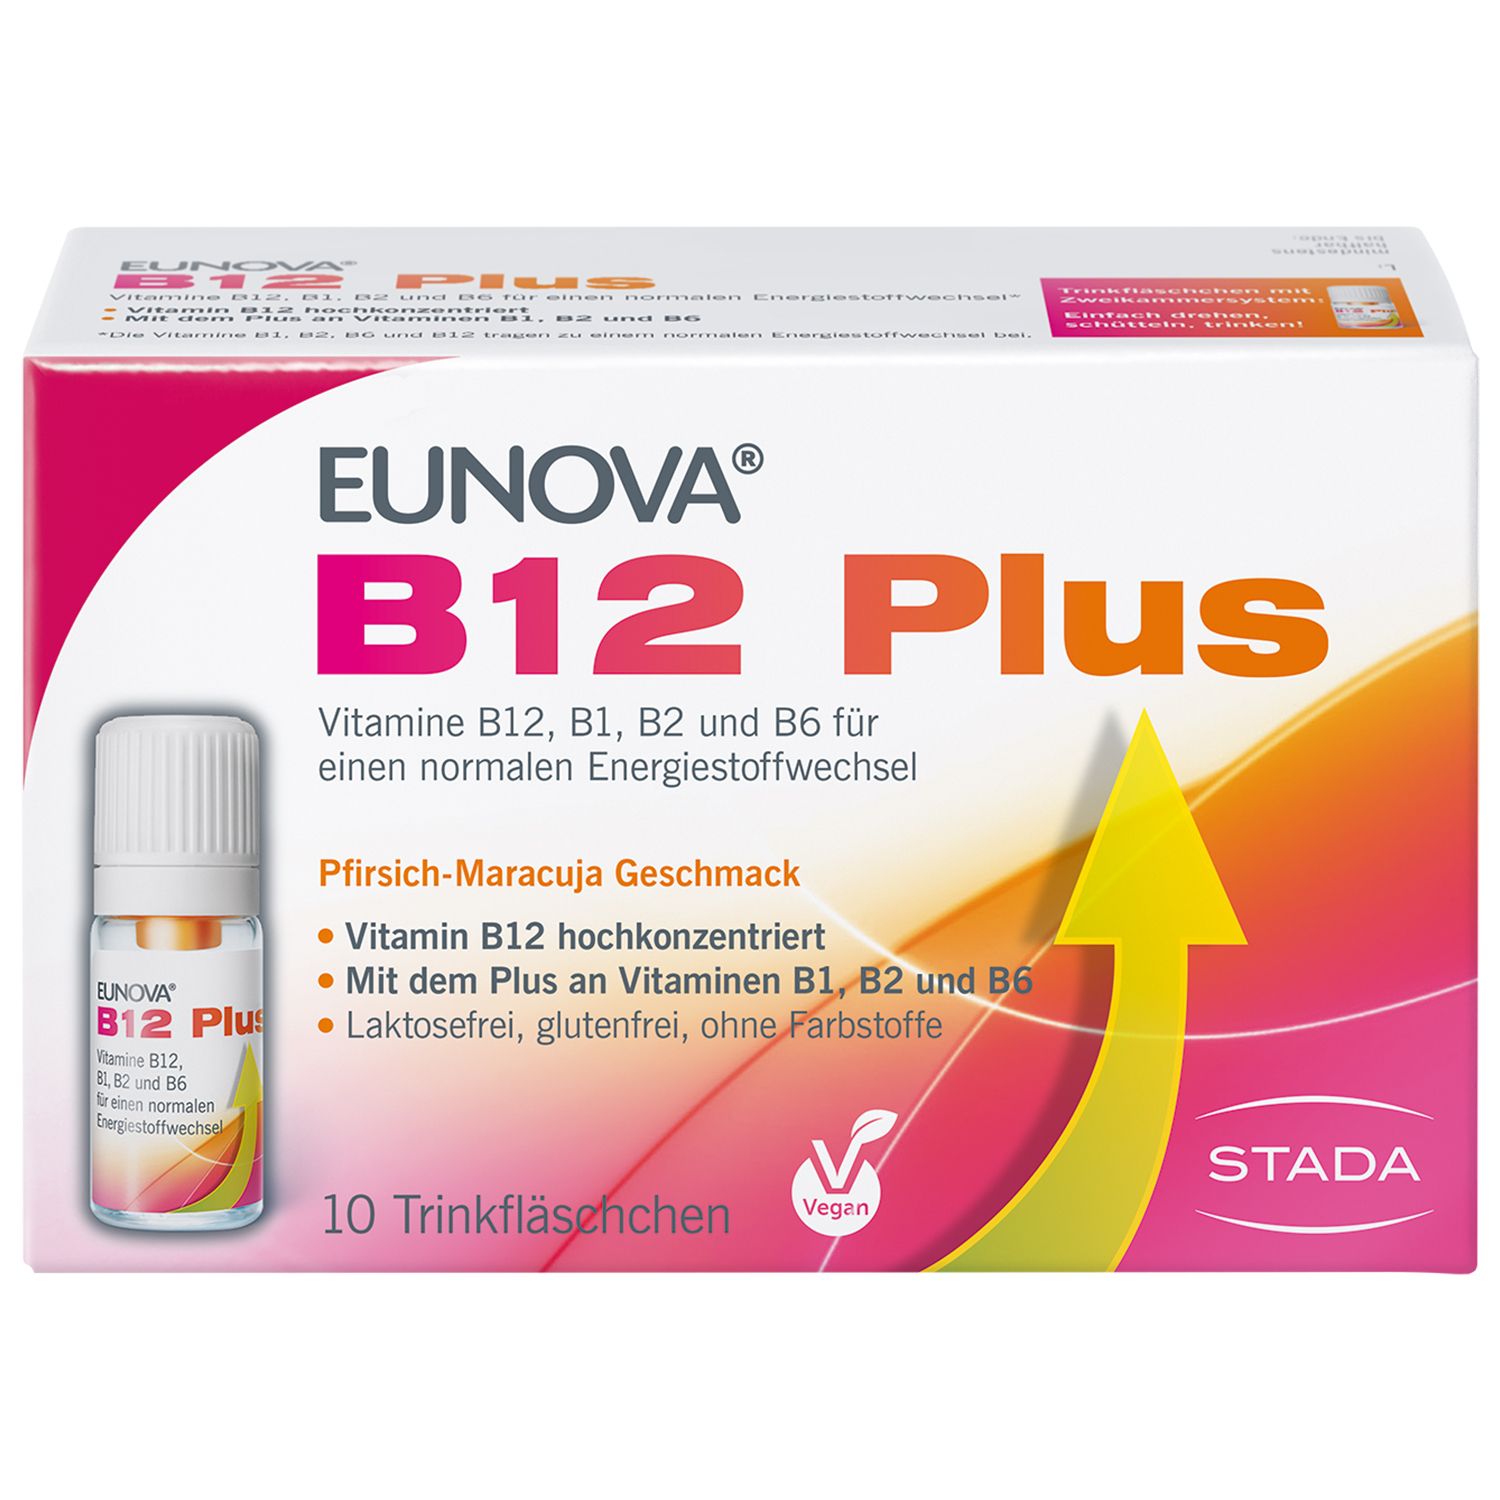 Eunova® B12 Plus zur Verringerung von Müdigkeit